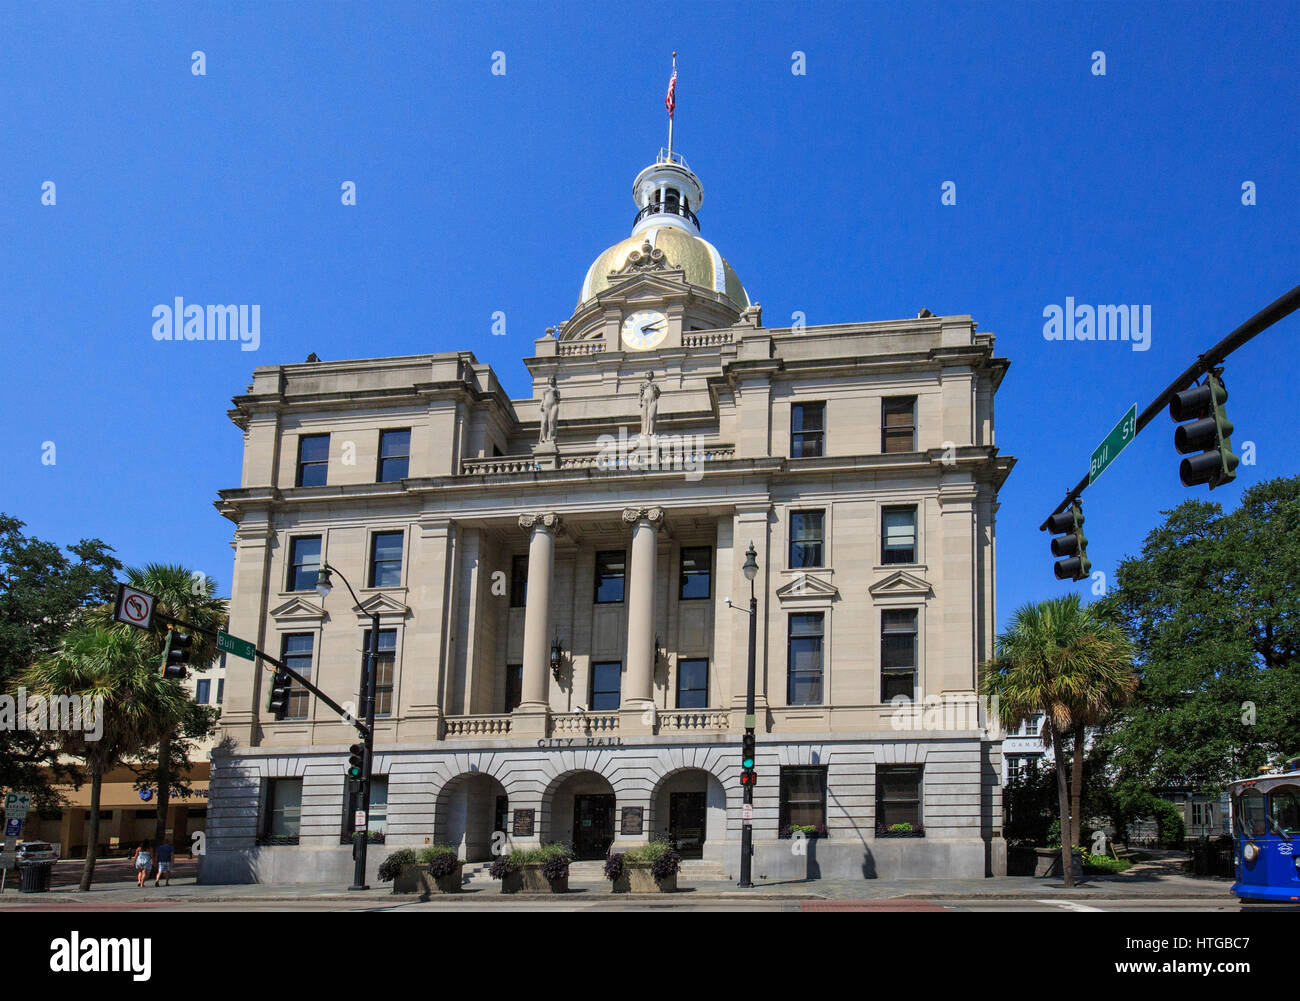 Savannah, Georgia City Hall building. Stock Photo